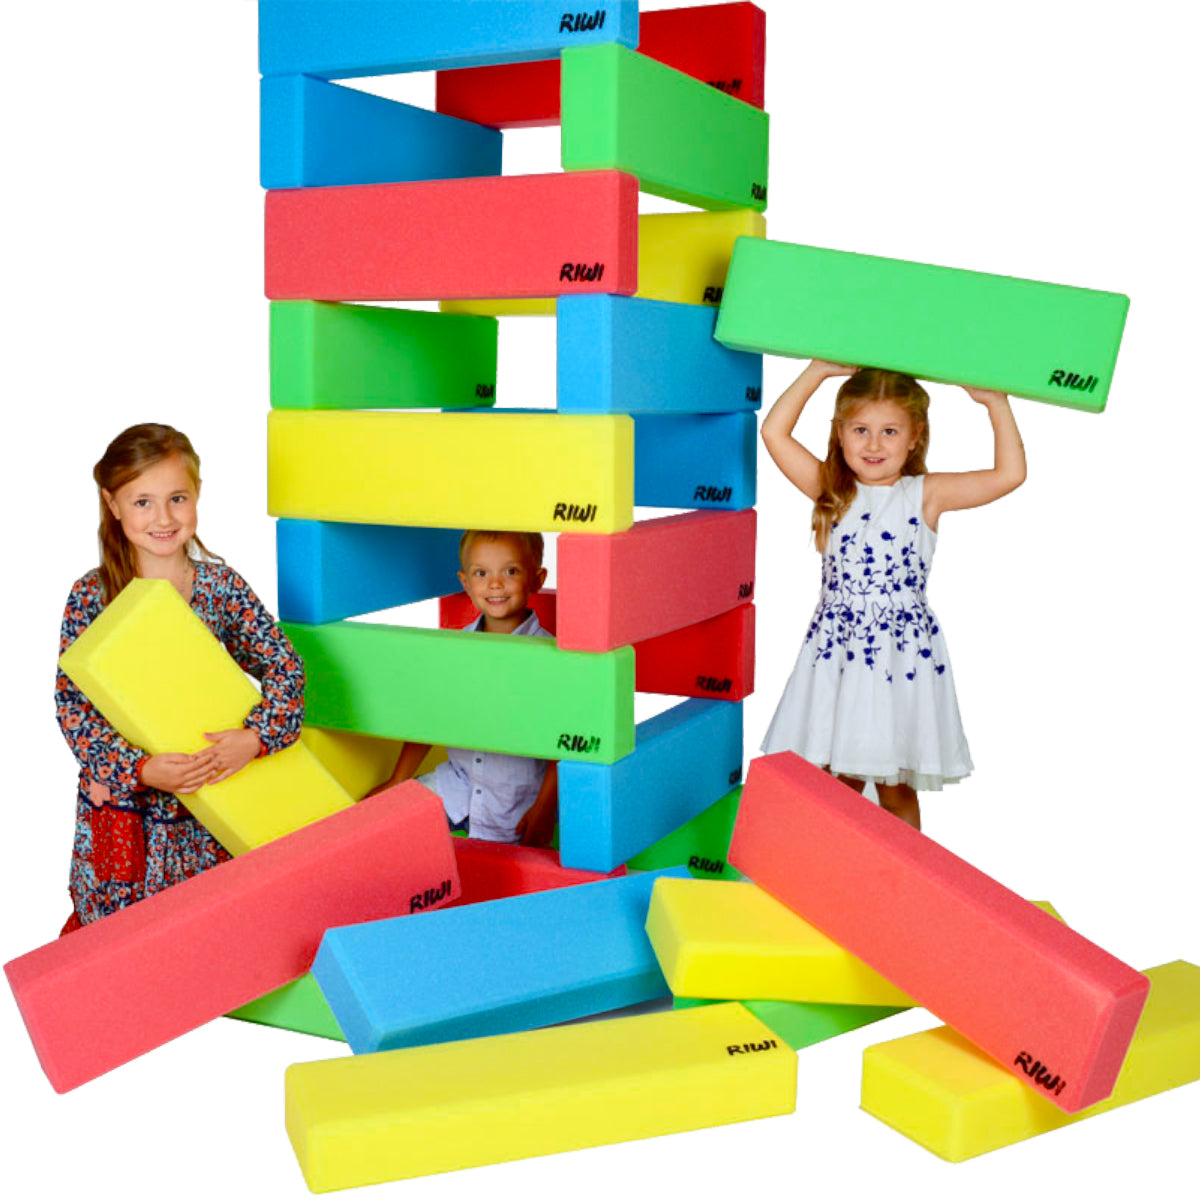 RIWI building blocks, XXL foam blocks